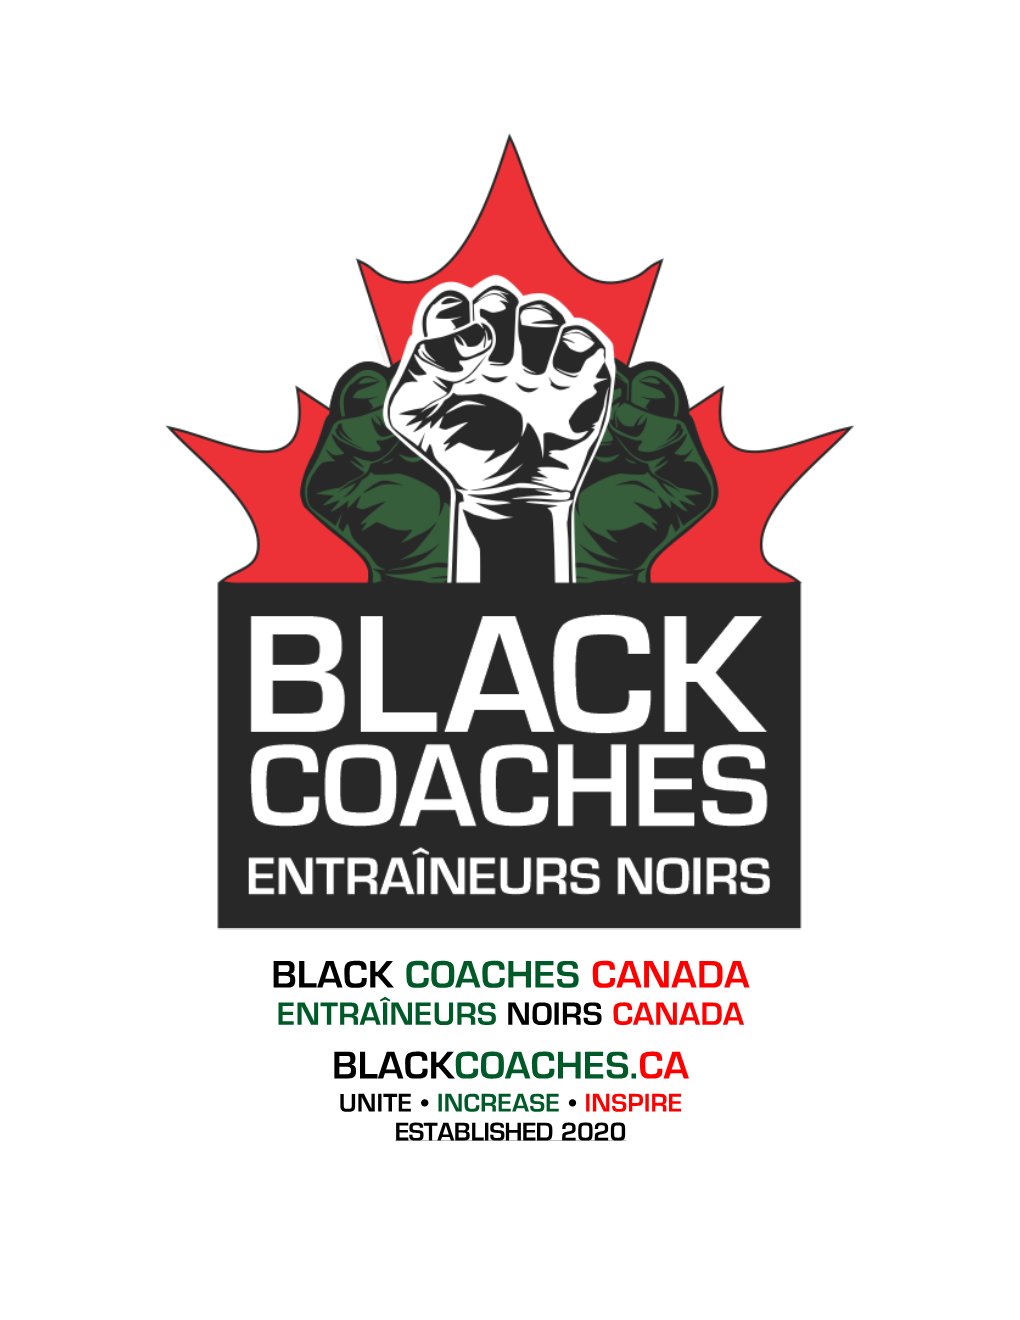 Black Coaches Canada Black Coaches Canada